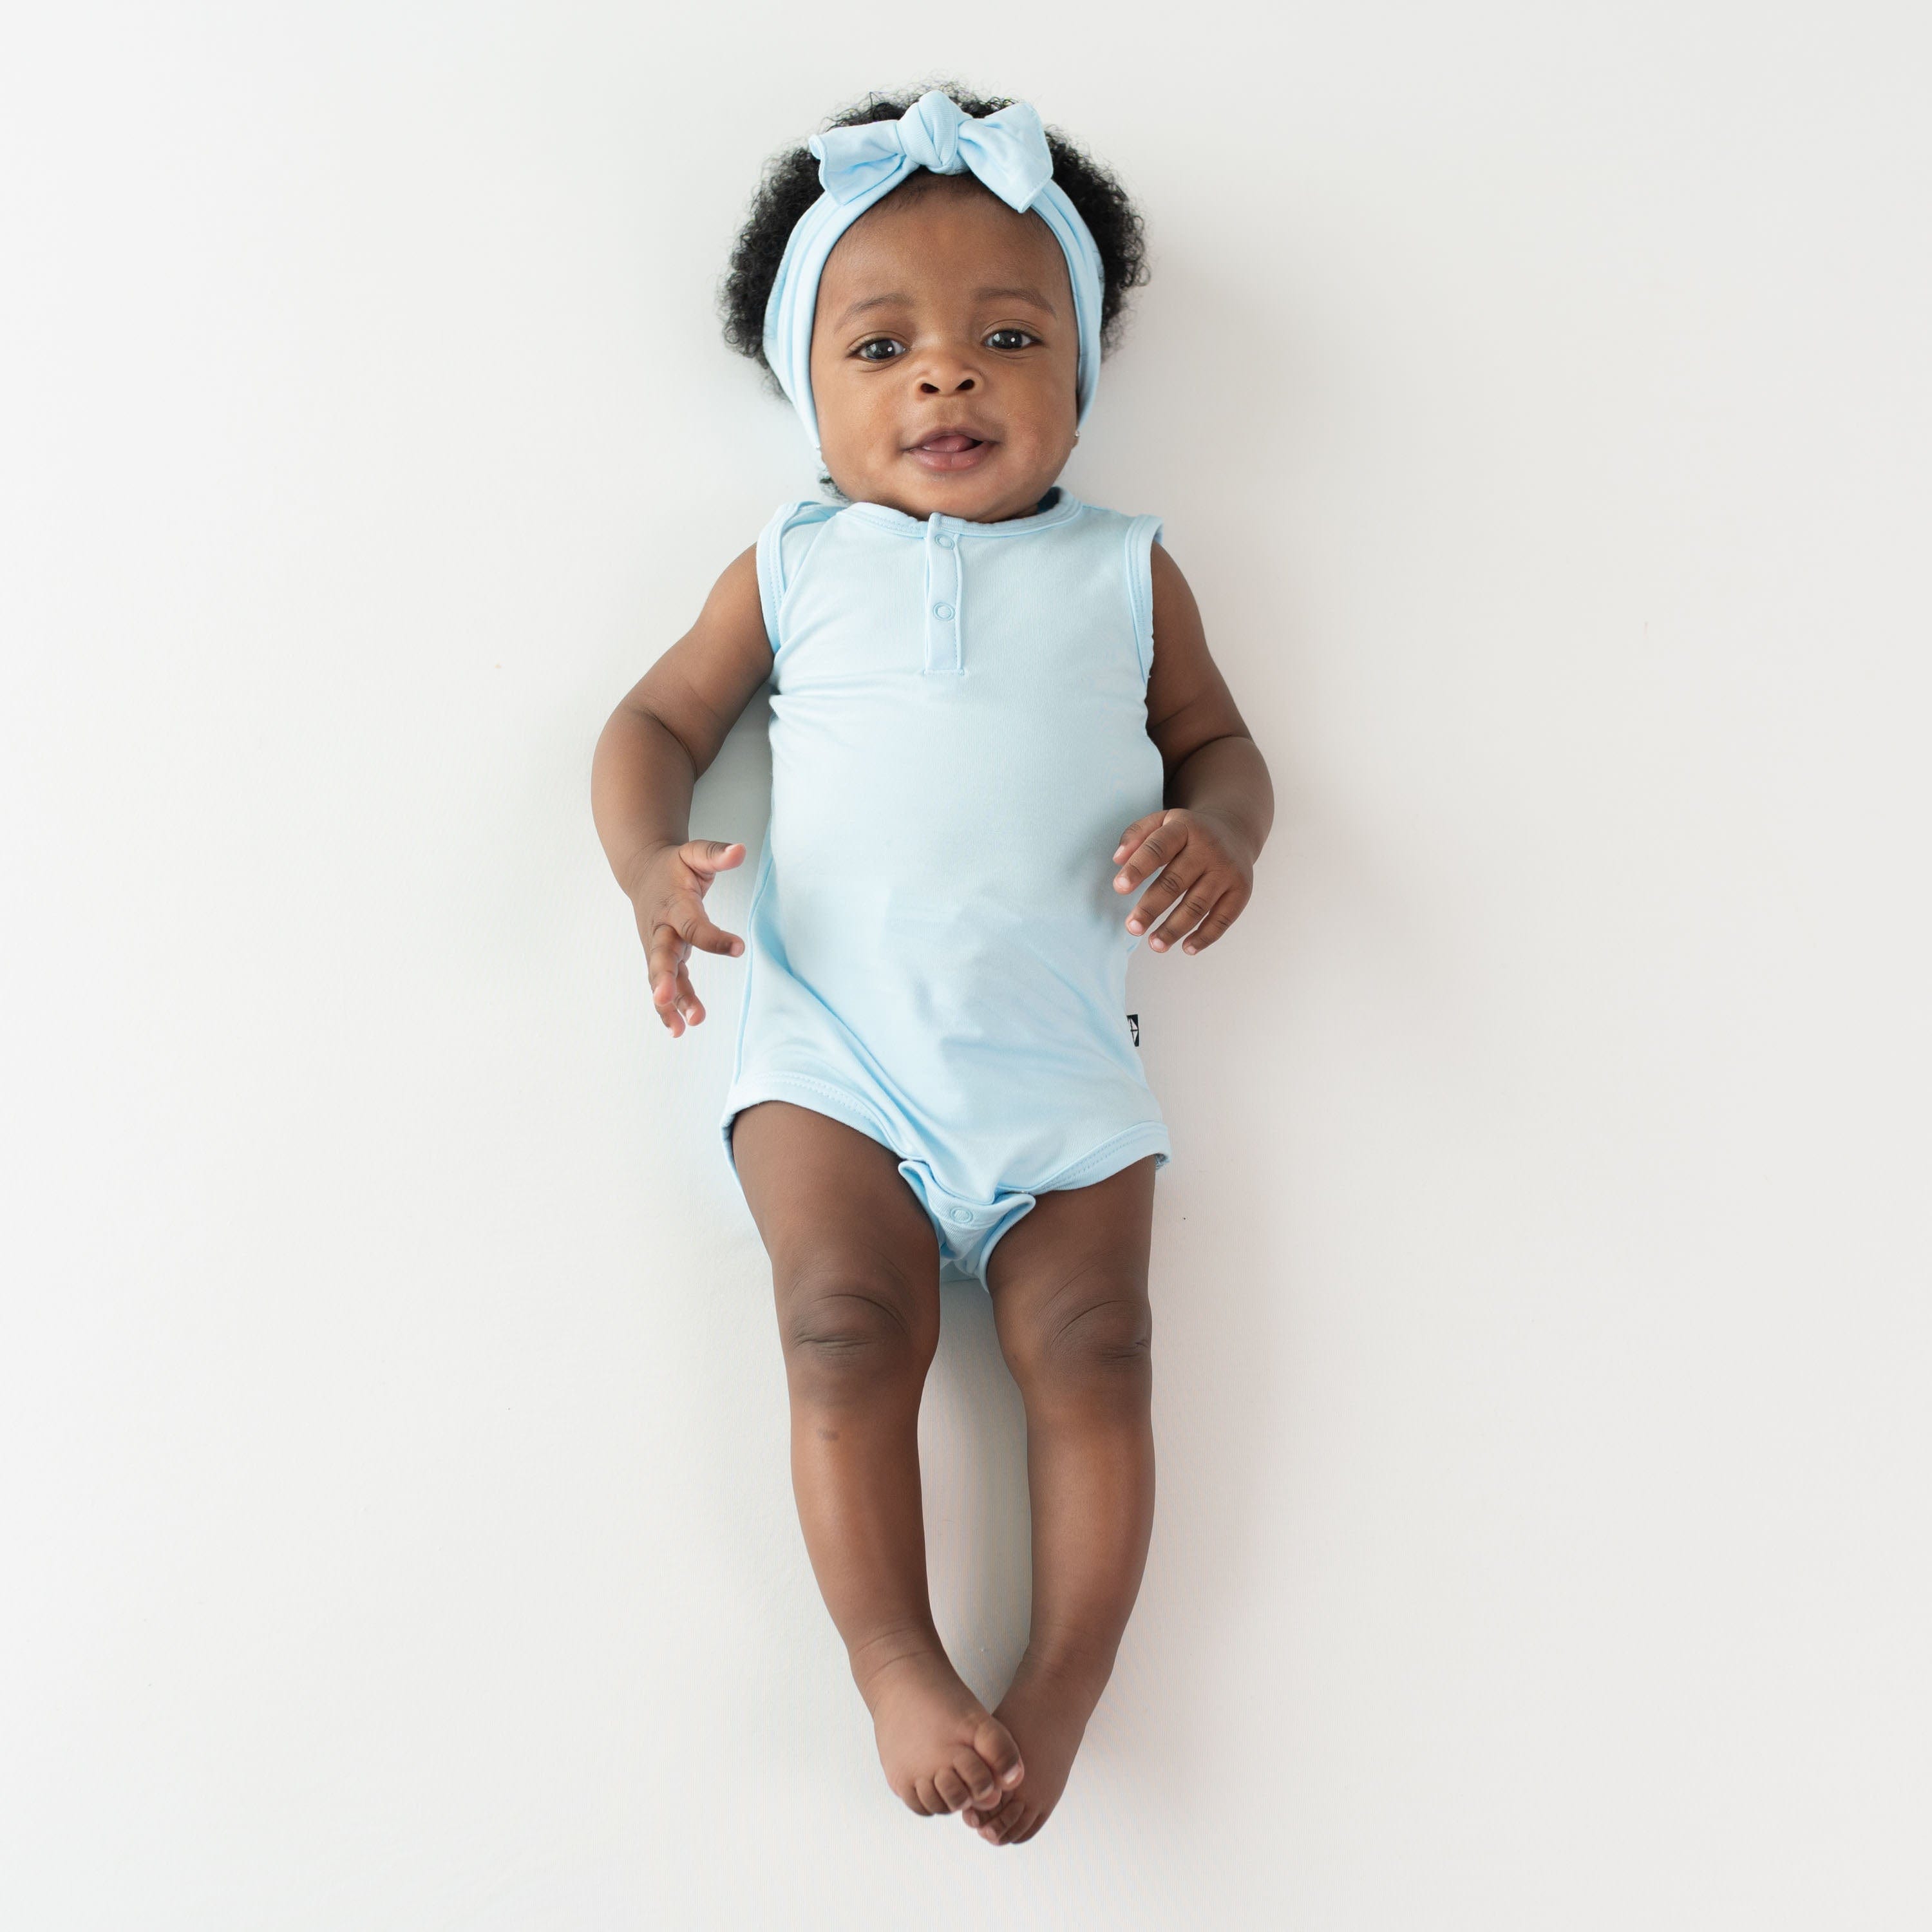 Kyte Baby Sleeveless Bodysuits Sleeveless Bodysuit in Powder